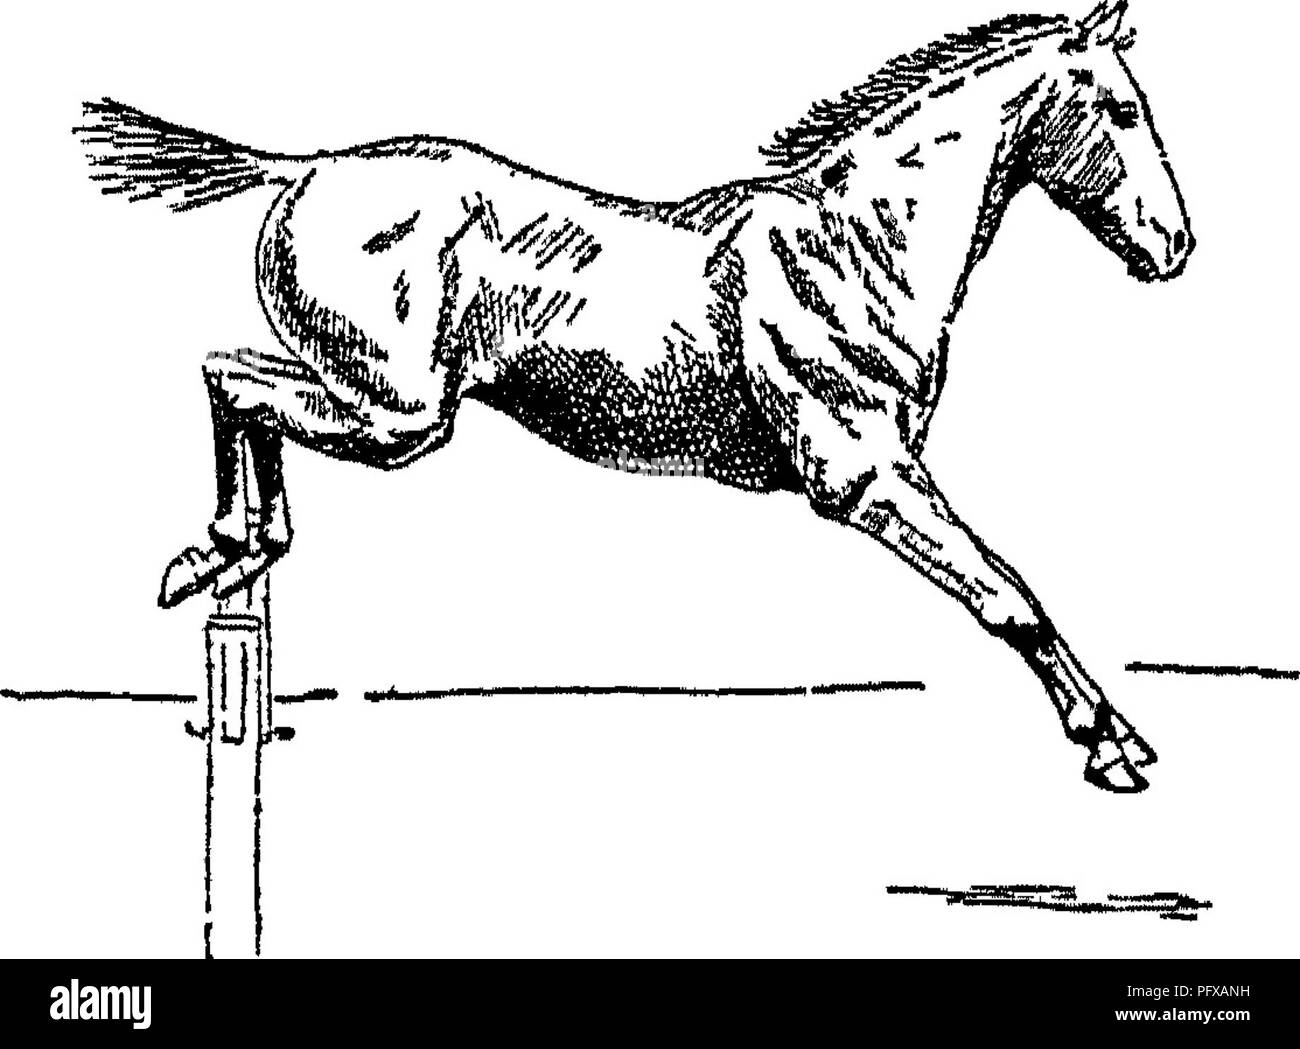 . Punkte des Pferdes; eine Abhandlung über den Körperbau, Bewegungen, Rassen und Evolution des Pferdes. Pferde. Landung über einen Sprung. 115 Pferd von einem Fall, wenn an diesem Moment es Begradigt, und nicht verbogen. Es ist evident, dass für die Sicherheit, das Knie des Beines, auf denen das Tier landet, so gerade wie möglich sein sollte, denn wenn die Knie*' gibt, "das Pferd wird fast sicher fallen. Daher kann der Zustand des Seins ** über die Knie" (s. 193) als schweren Mangel in der Jumper, vor allem, wenn er schnell zu gehen. In der Regel wird bei der Landung über einen Sprung, die Hinterfüße Stockfoto